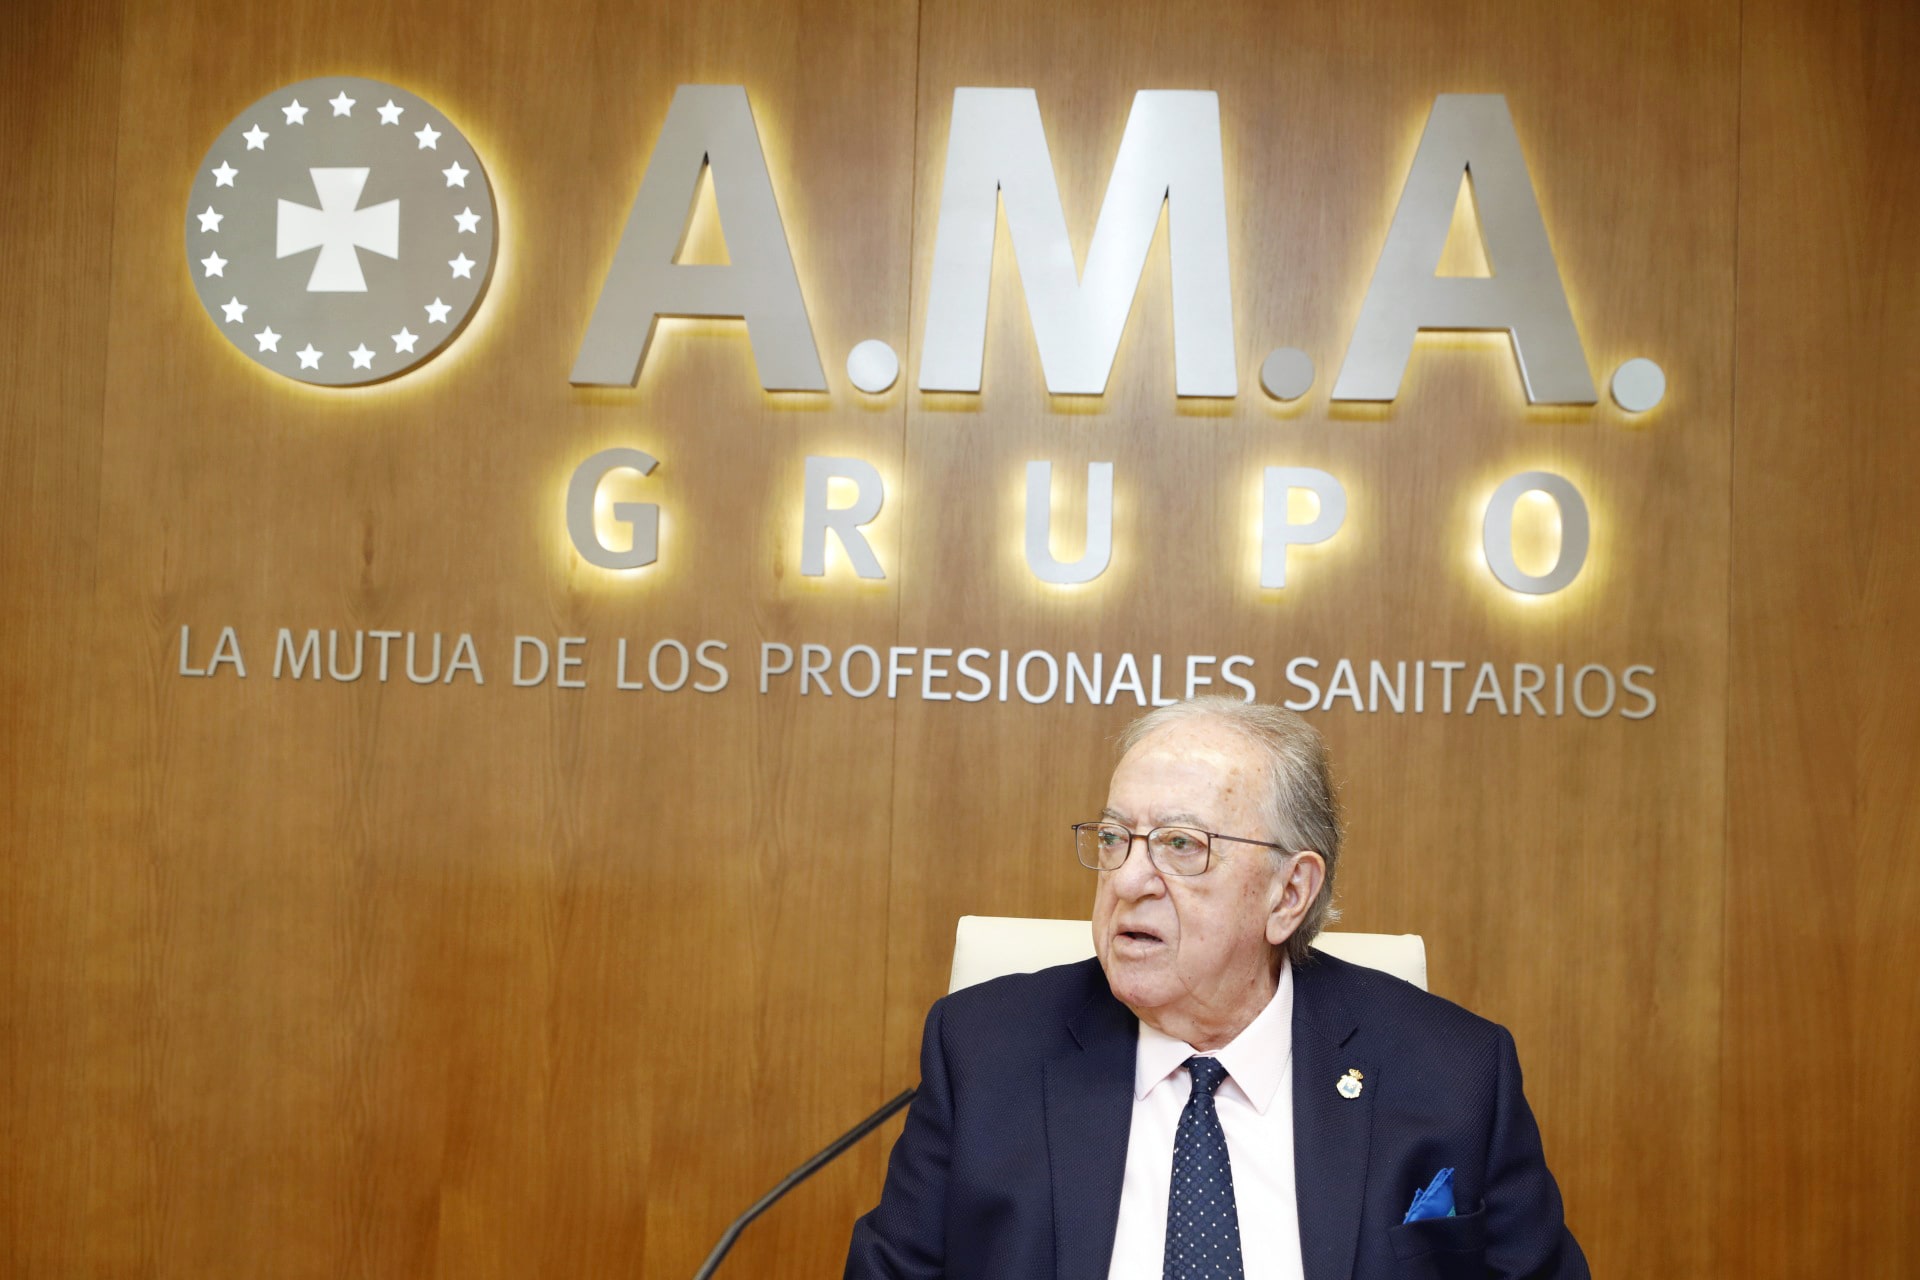 El Dr. Murillo entrega los IX Premios Mutualista Solidario de la Fundación A.M.A. con 60.000 euros a proyectos solidarios